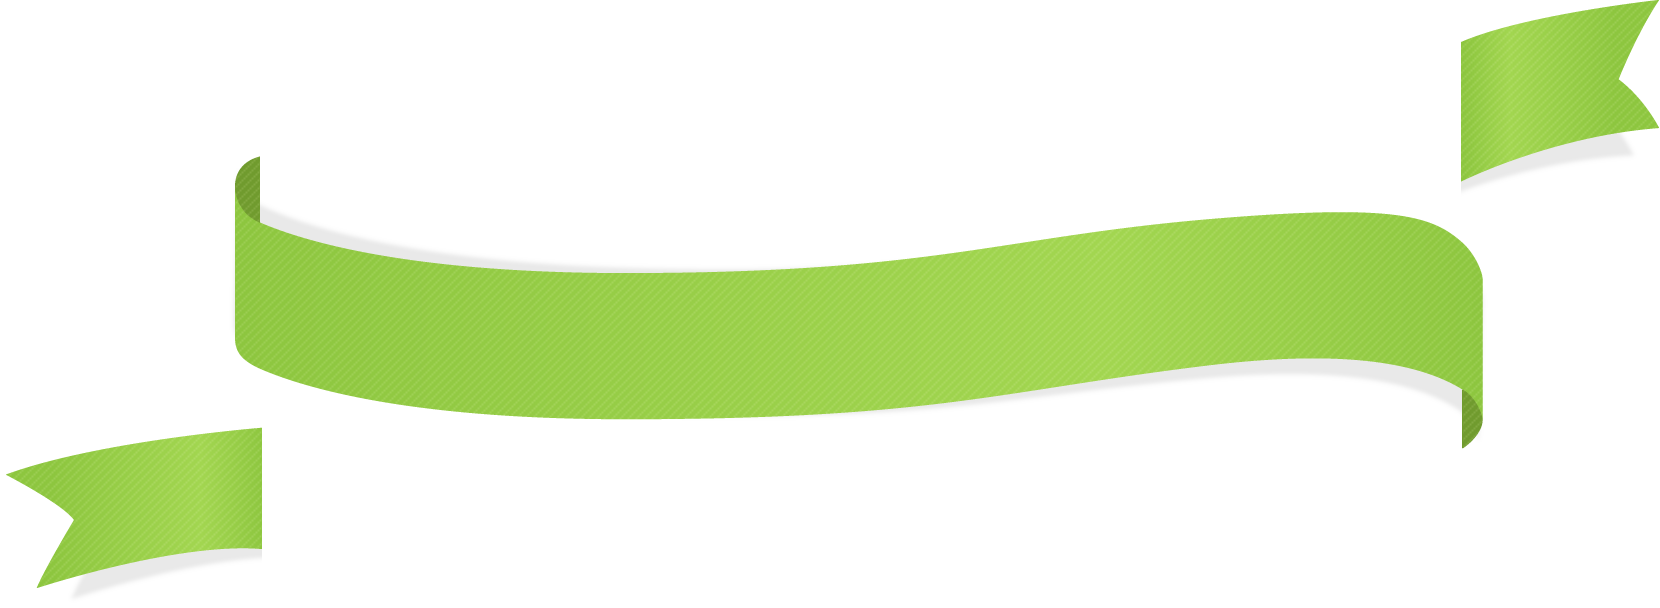 Groen lint PNG Transparant Beeld